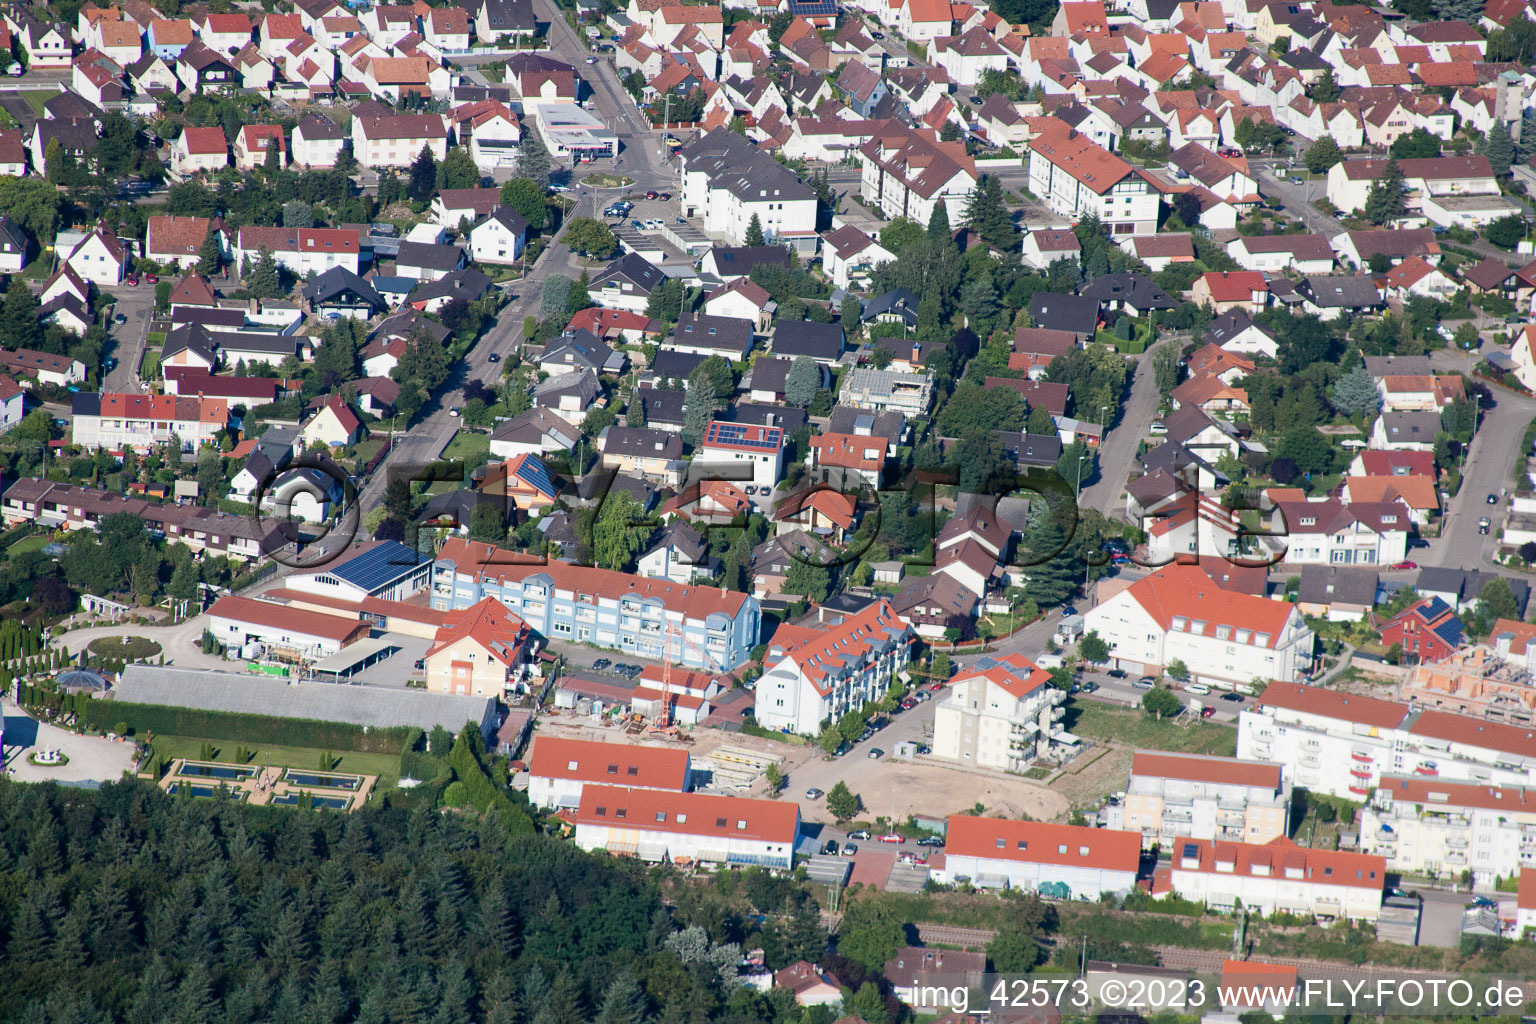 Jockgrim im Bundesland Rheinland-Pfalz, Deutschland aus der Drohnenperspektive